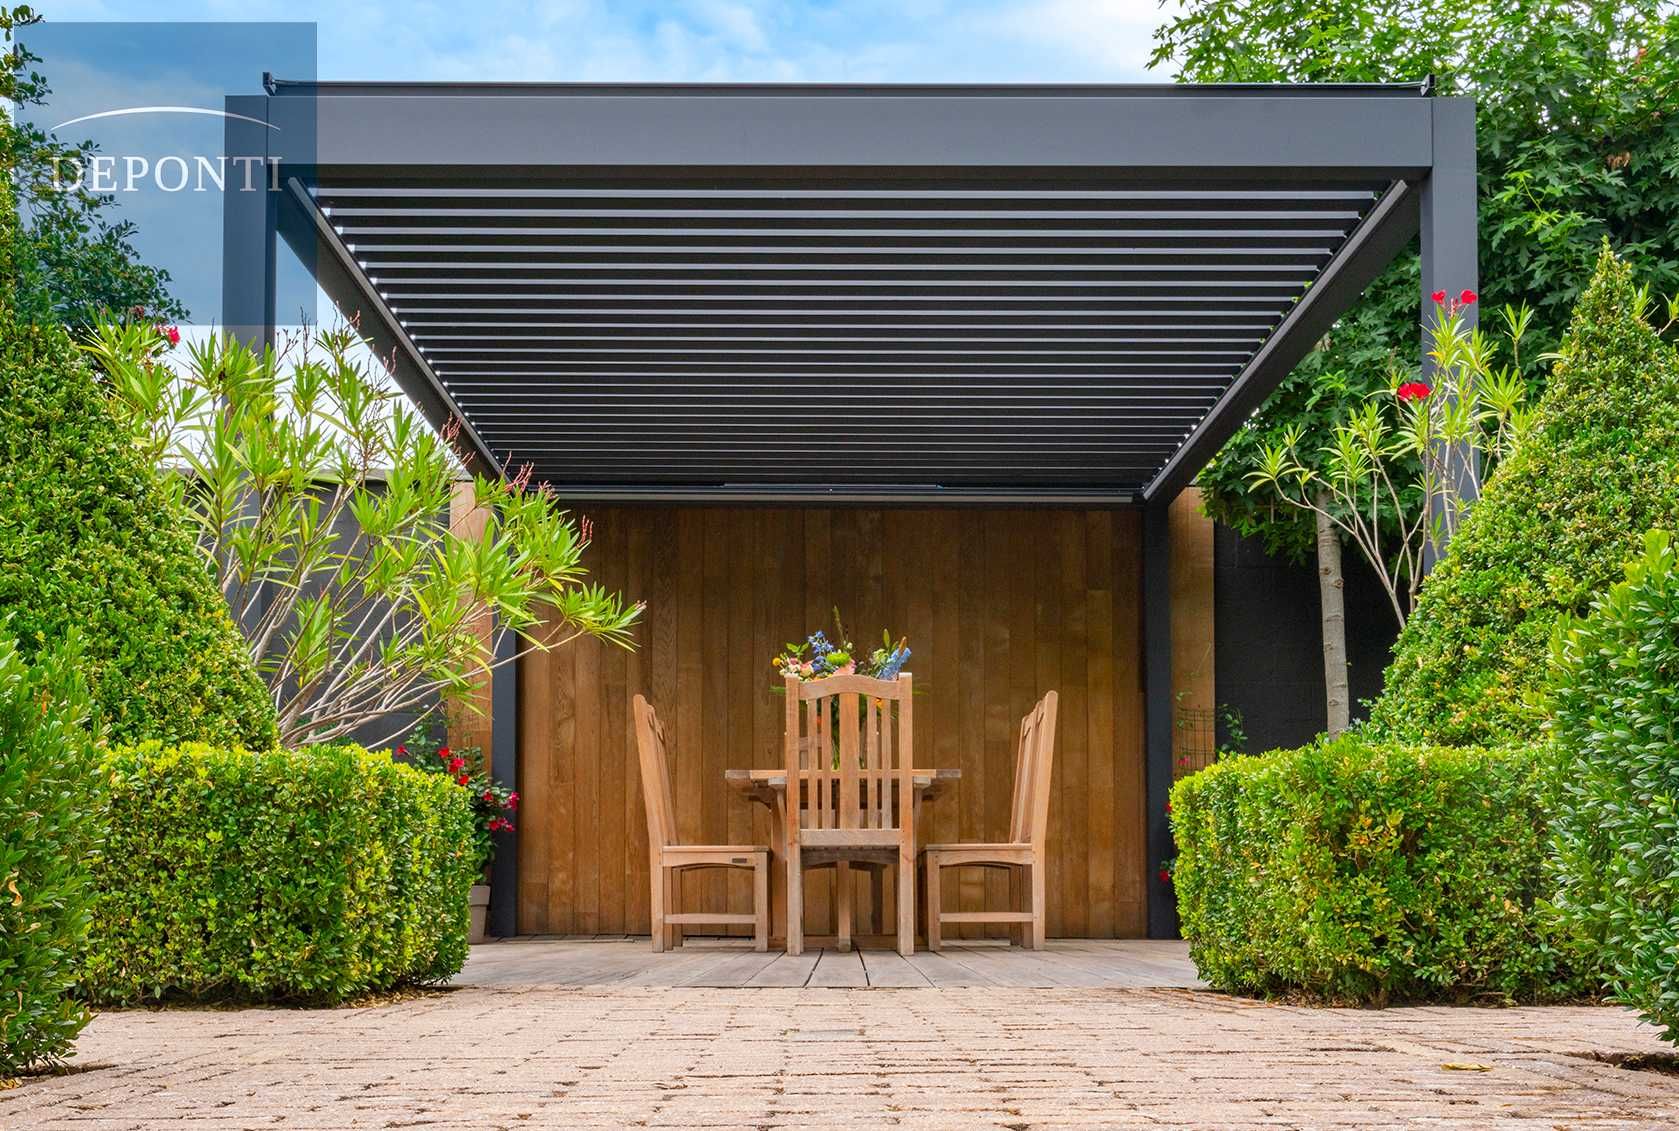 Zadaszenia aluminiowe lamelowe, ogród letni, patio żaluzje 3x3m